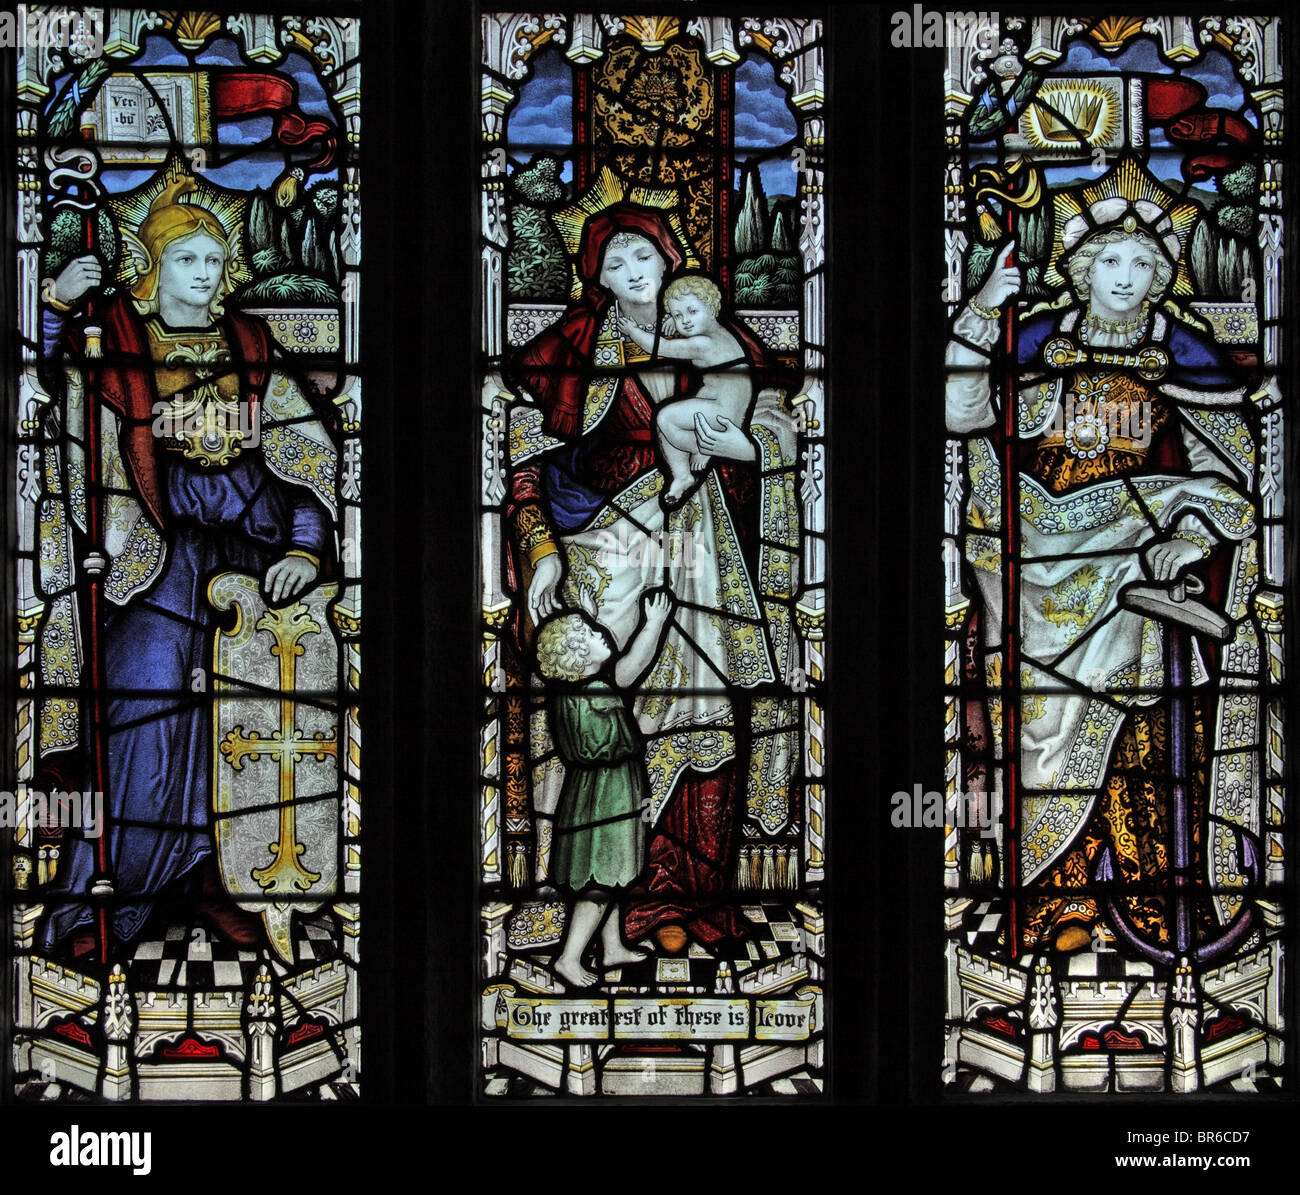 Ein Buntglasfenster von C E Kempe & Co, 1907 mit drei Tugenden, Glaube, Hoffnung und Nächstenliebe, Marhamchurch Church, Cornwall. Künstler John Lisle Stockfoto